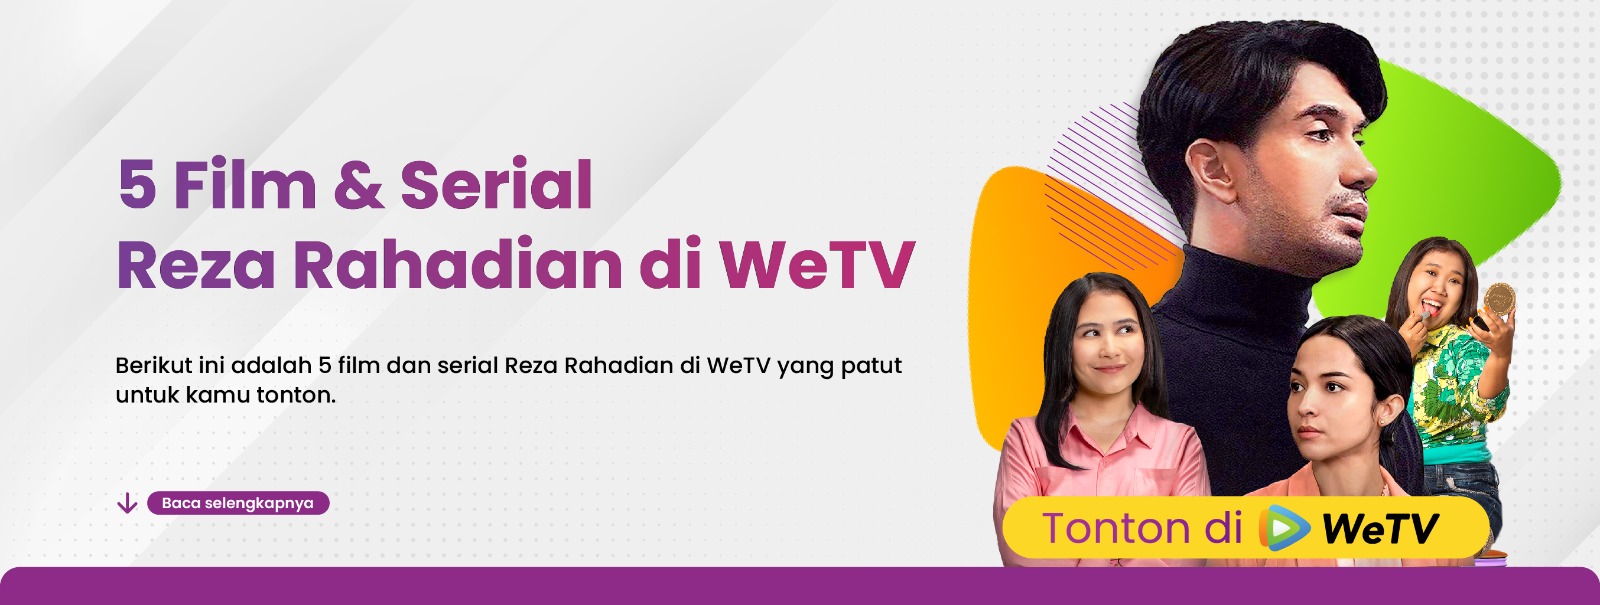 5 Film & Serial Reza Rahadian di WeTV